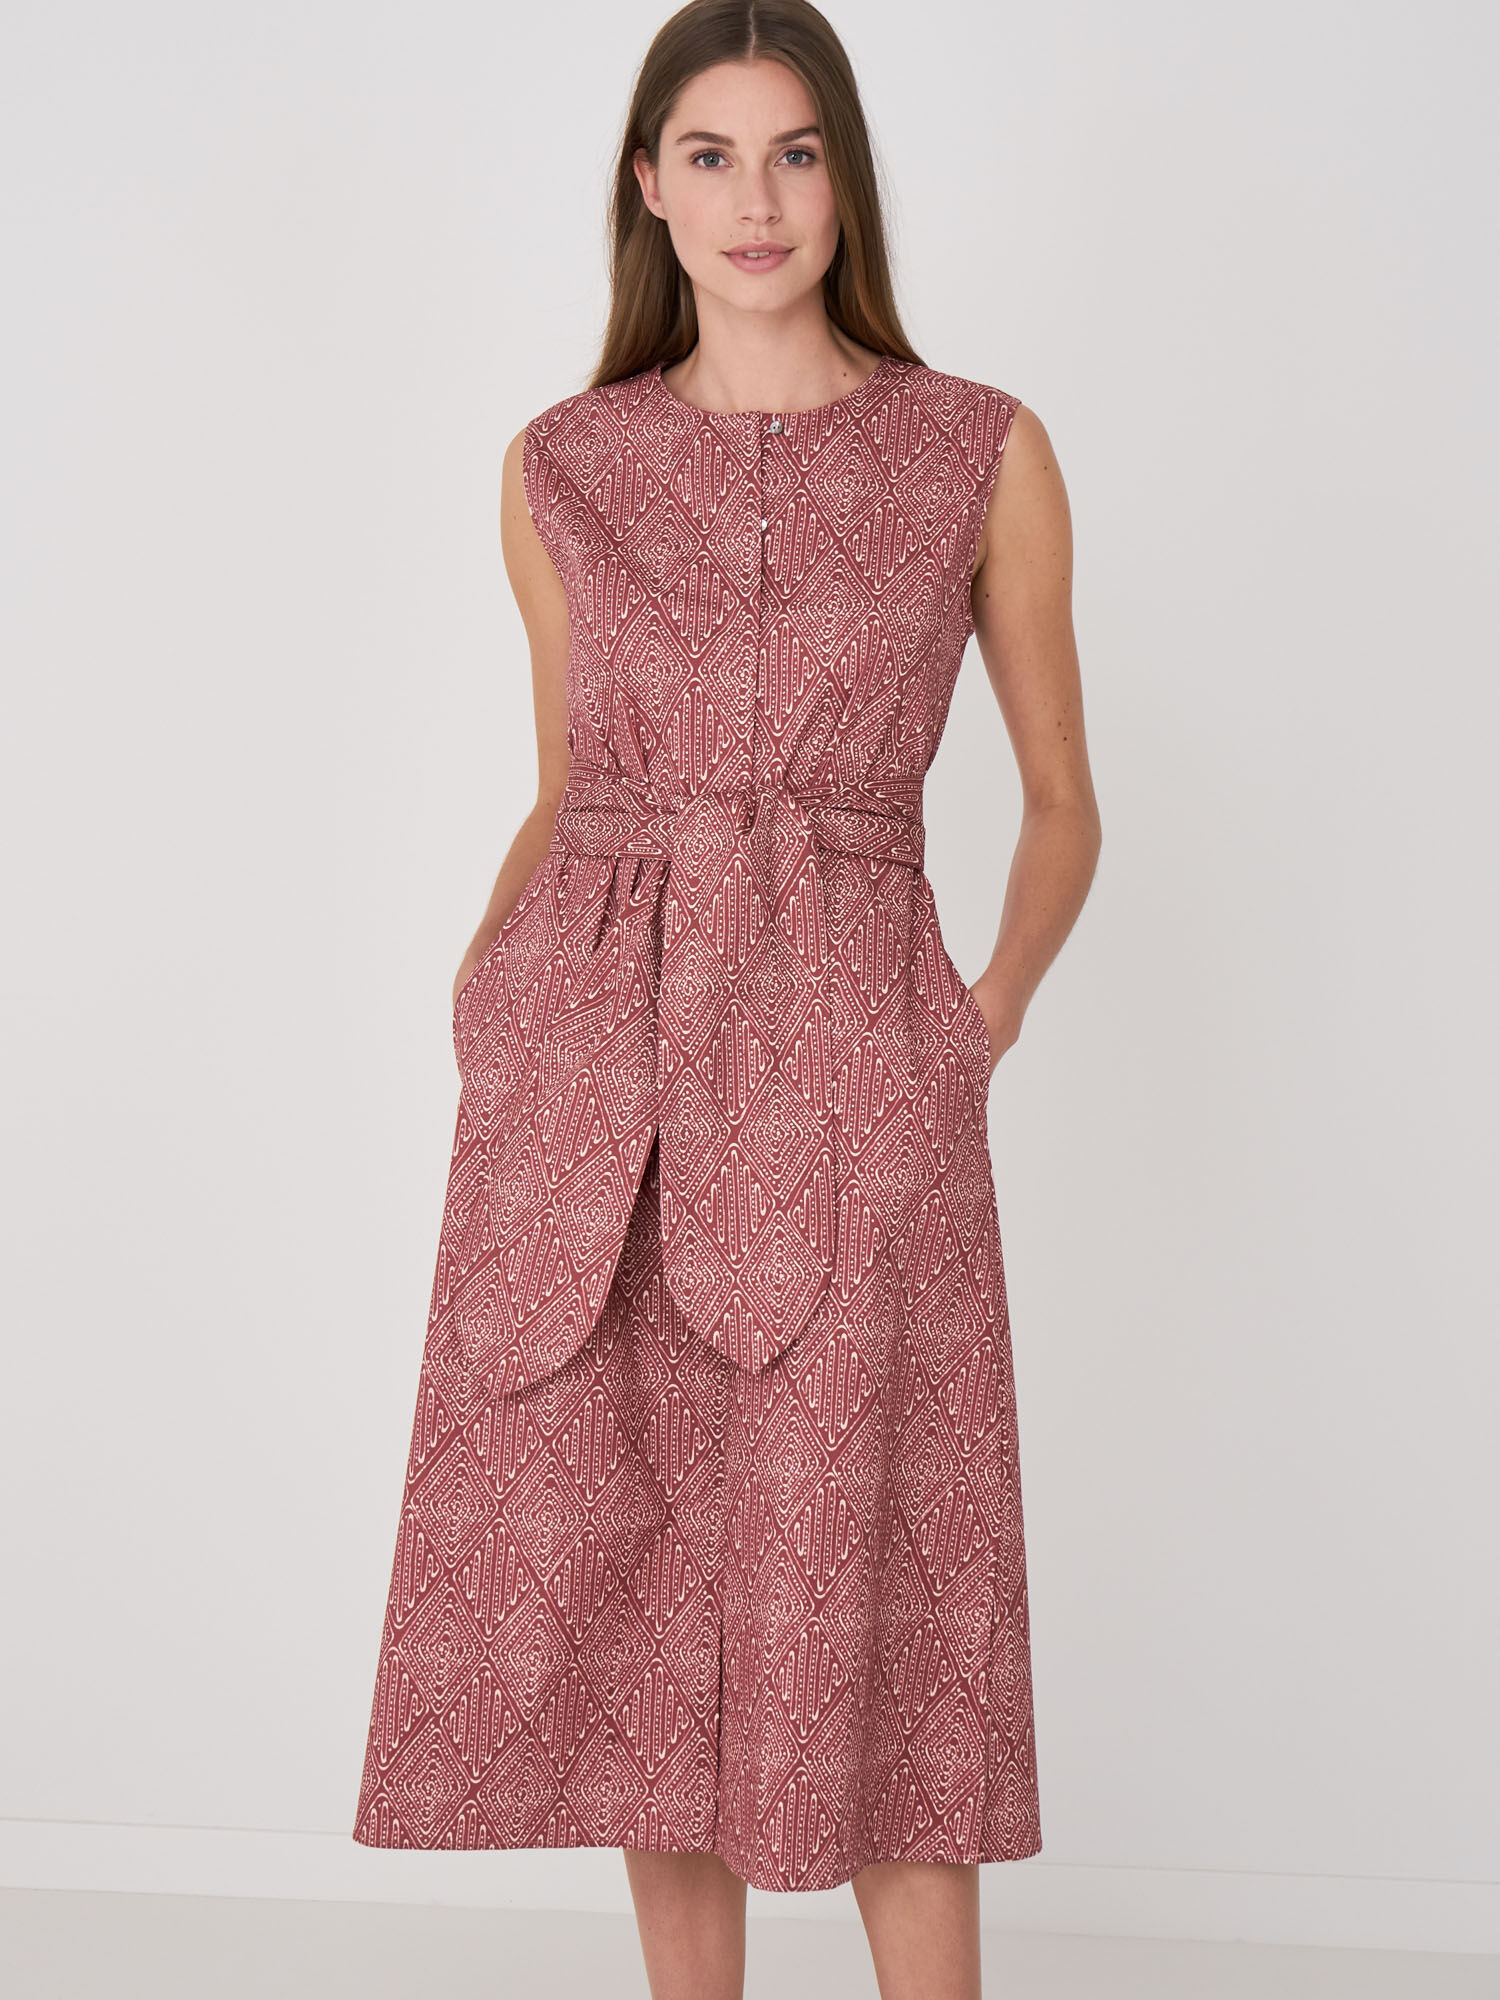 Mouwloze jurk met etnische print en riem